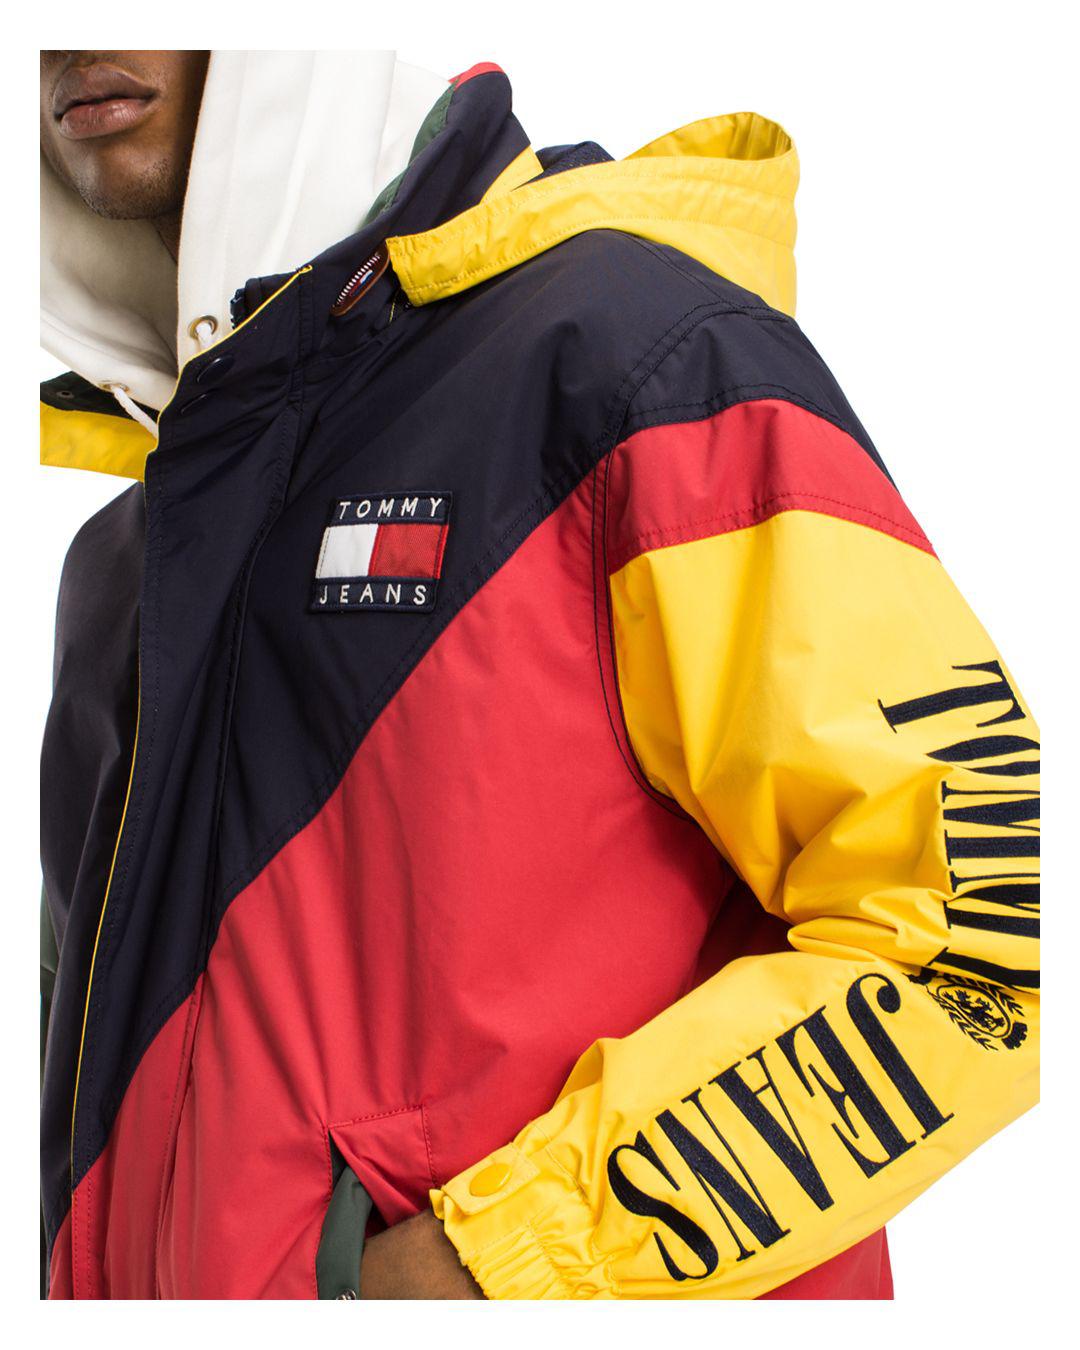 Tommy Hilfiger Denim Tommy Jeans 90's Color-blocked Hooded Sailing Jacket  for Men - Lyst